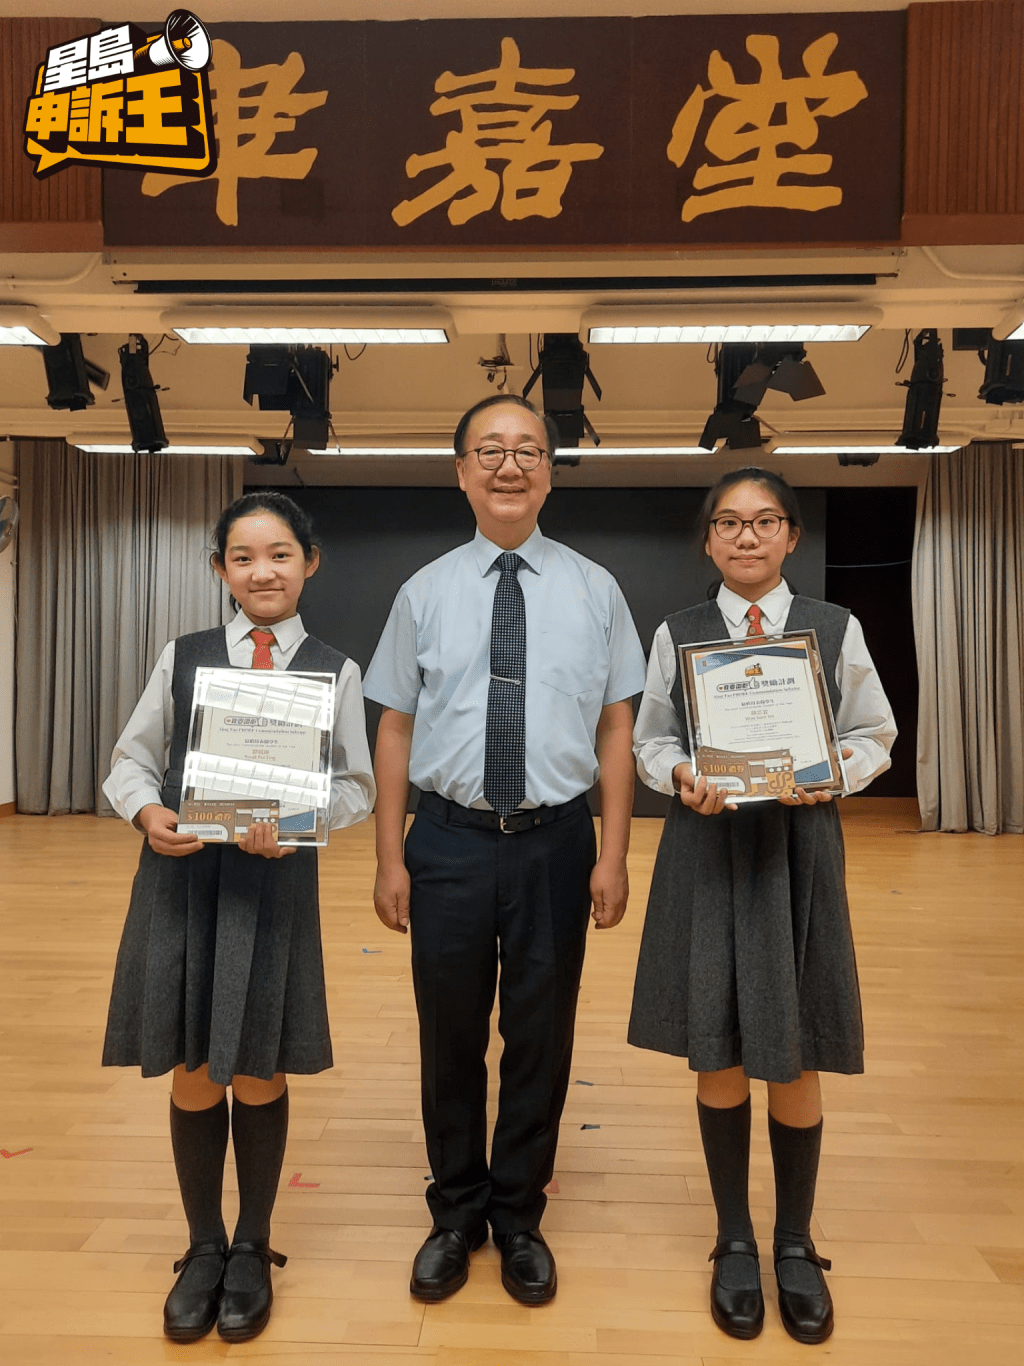 沪江小学锺振文校长与两位得奖同学郭佩𤧟（左）及胡芯宜（右）合照留念。